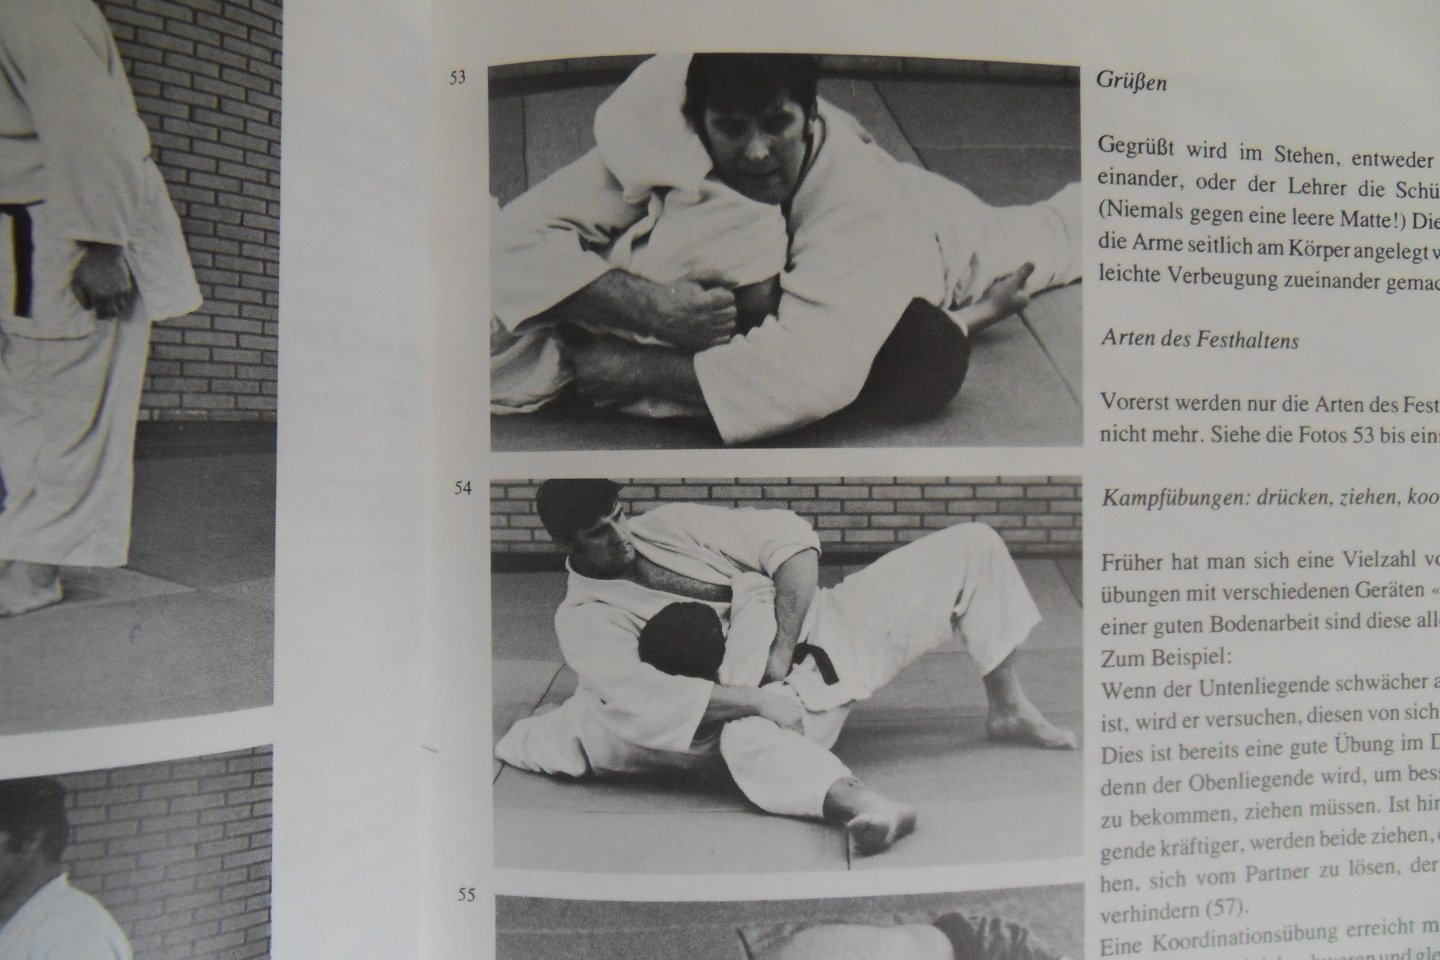 Geesink, Anton.  [ ! GESIGNEERD door Anton Geesink ]. - Judo in Evolution. - Vollständiger, neuer Judolehrgang.